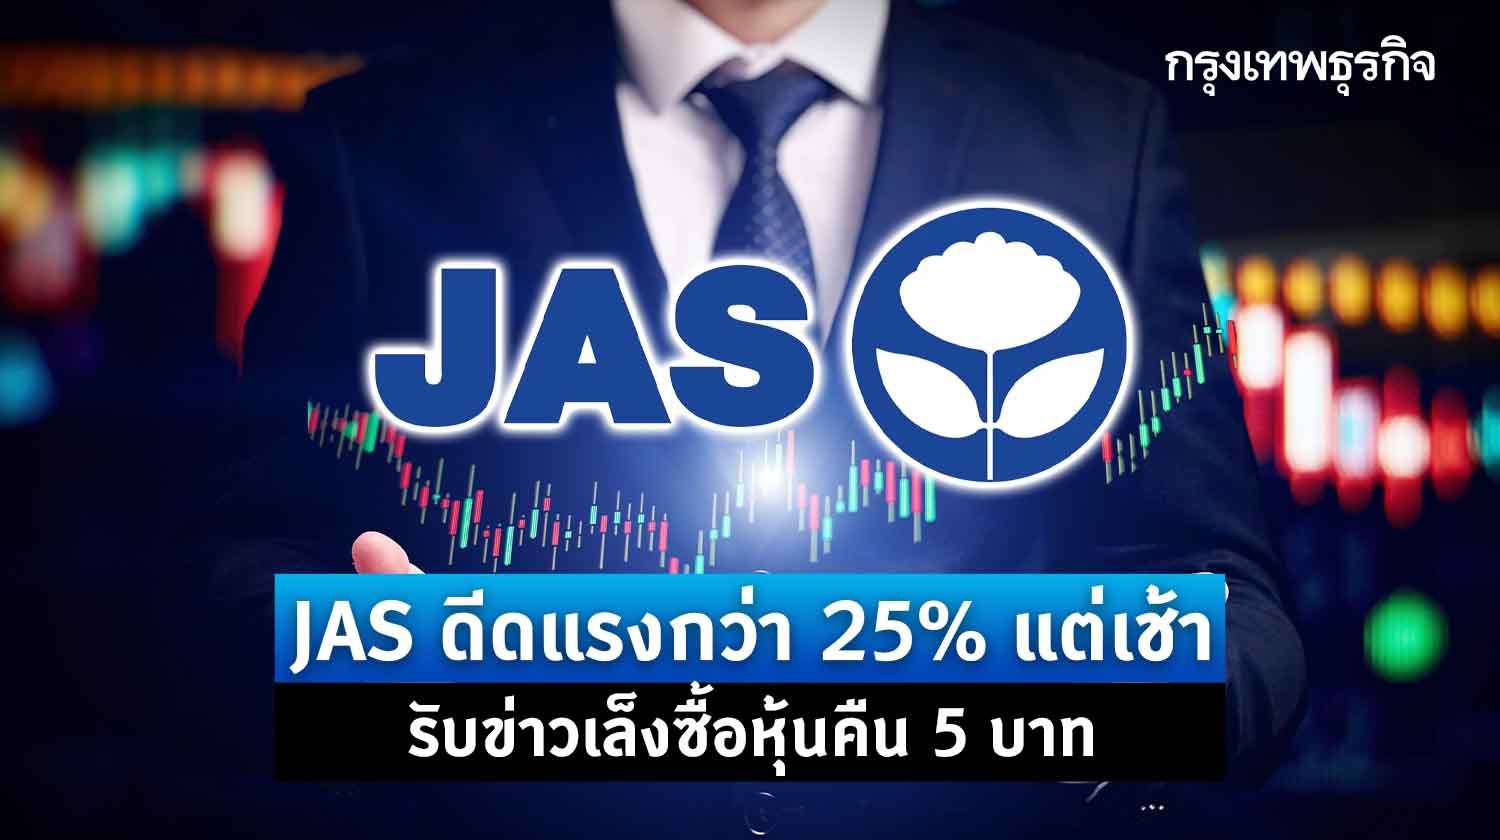 jas ดีดแรงกว่า 25% แต่เช้ารับประเด็นจ่อซื้อหุ้นคืน 5 บาท แถมเล็งแจก jas-w4